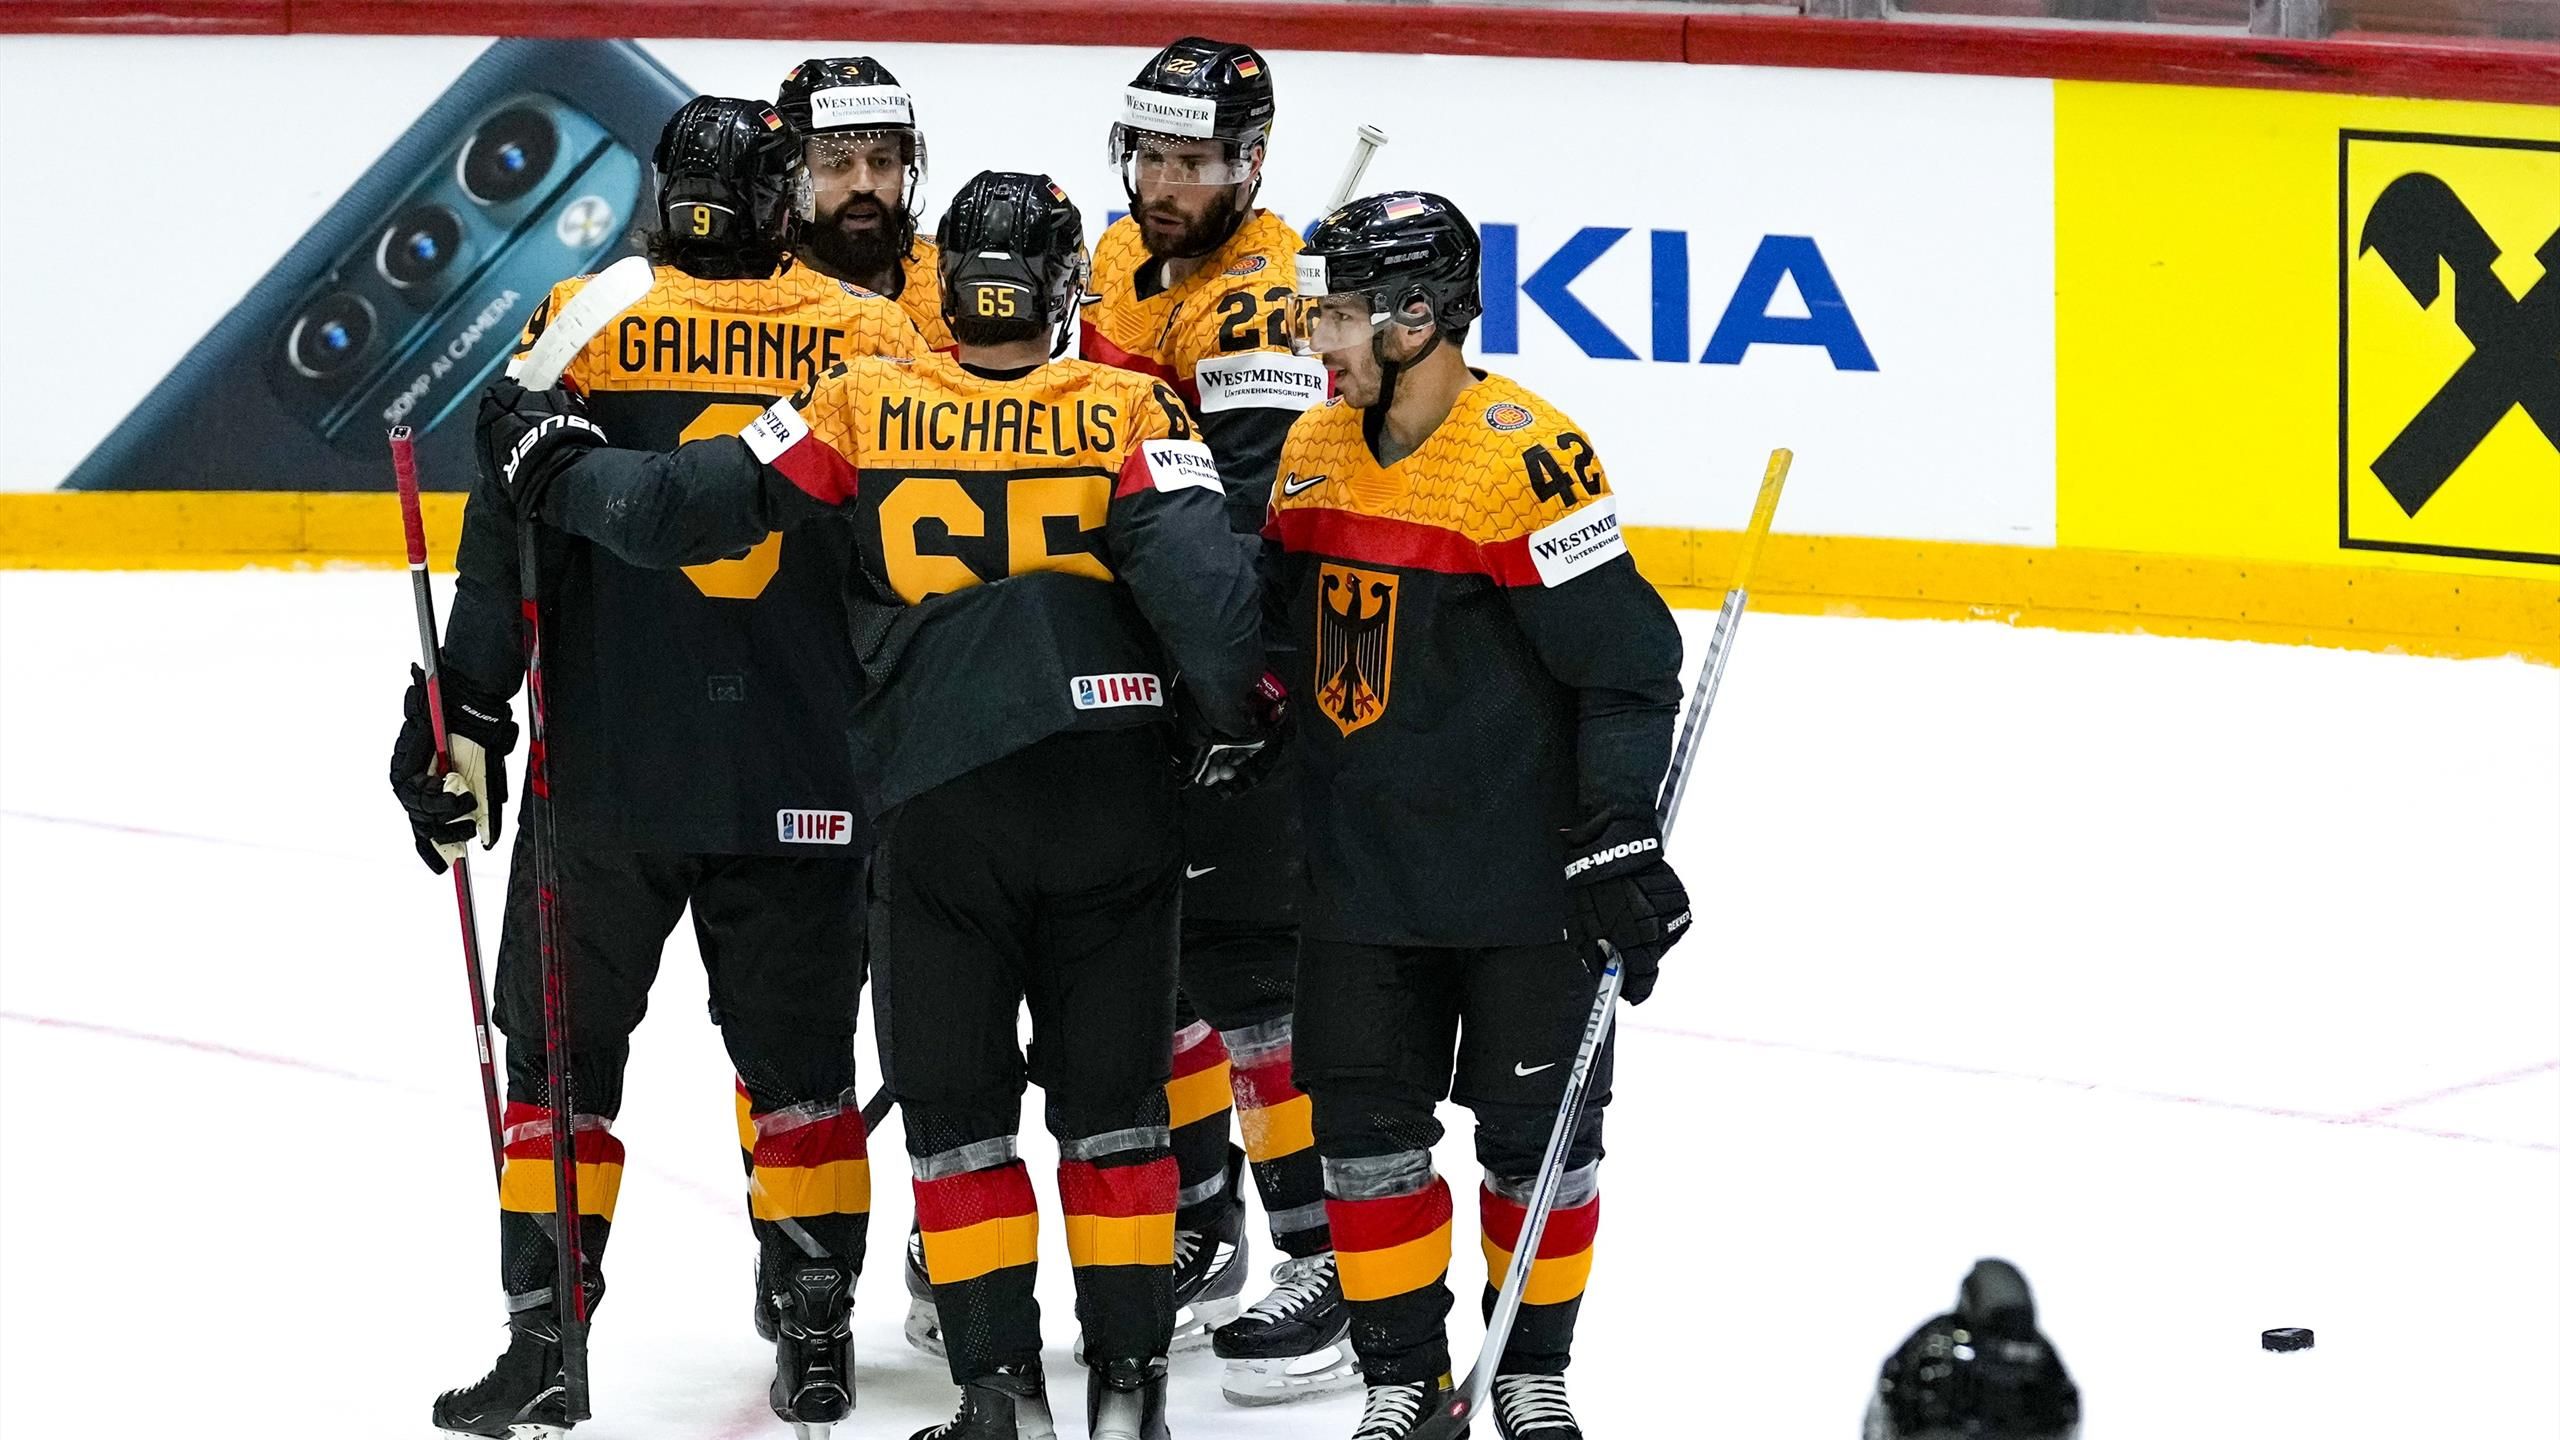 Eishockey-WM Deutschland vorzeitig für Viertelfinale qualifiziert - Dänemark hilft mit Sieg gegen Frankreich